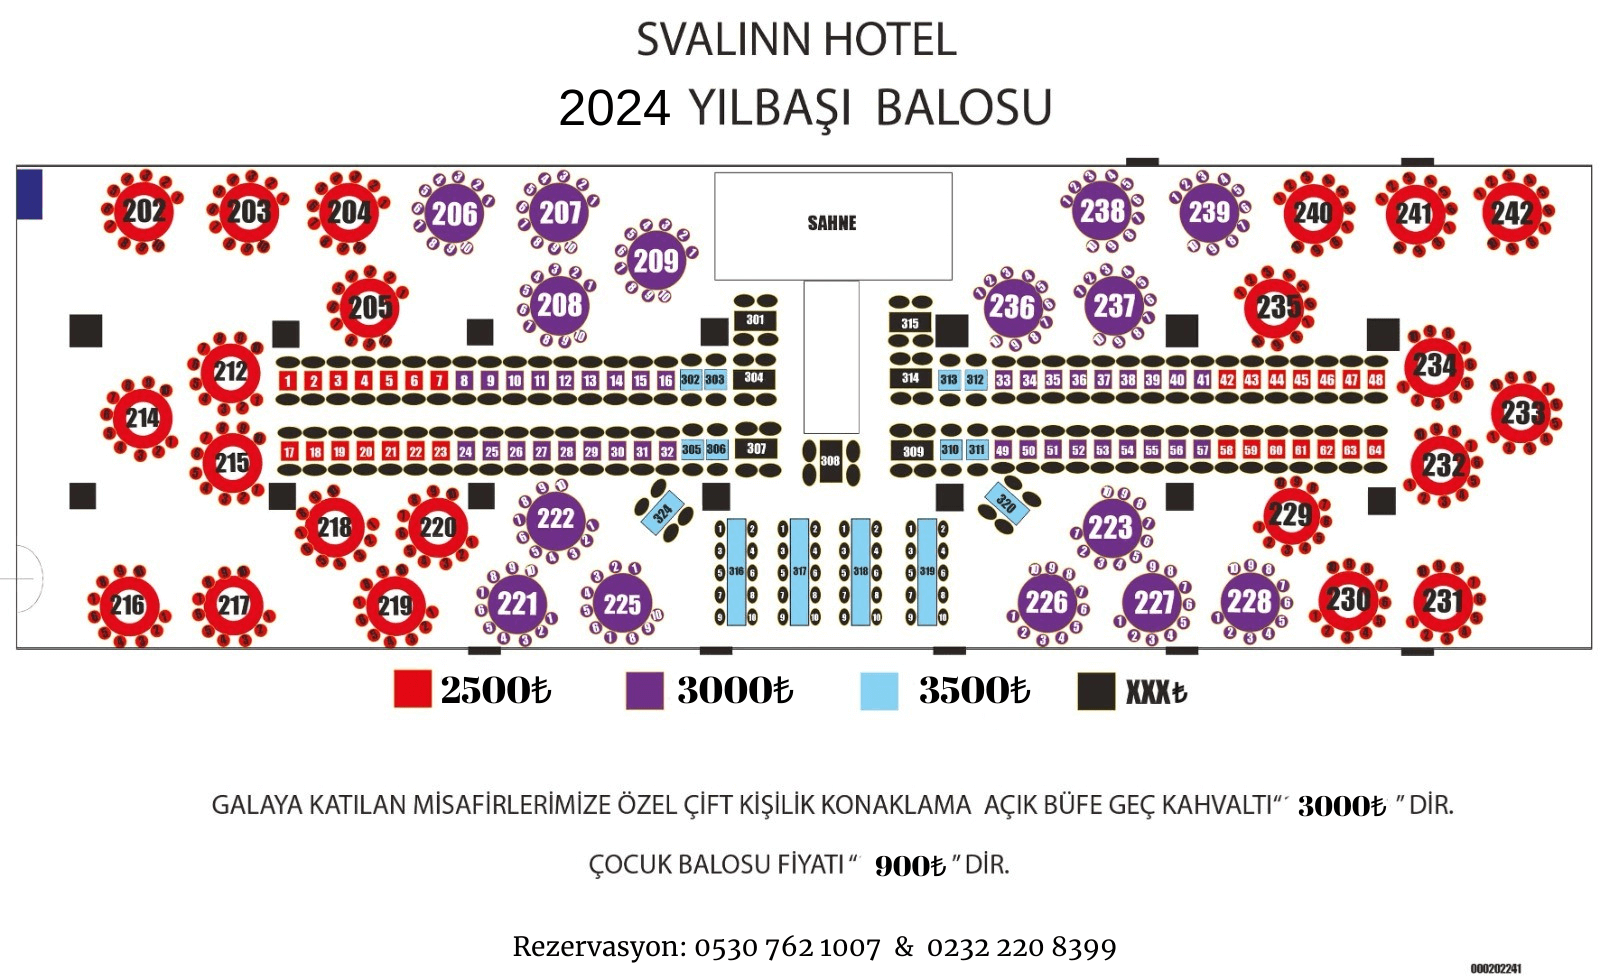 İzmir Yılbaşı 2024 - İzmir Svalinn Otel Yılbaşı Programı 2024